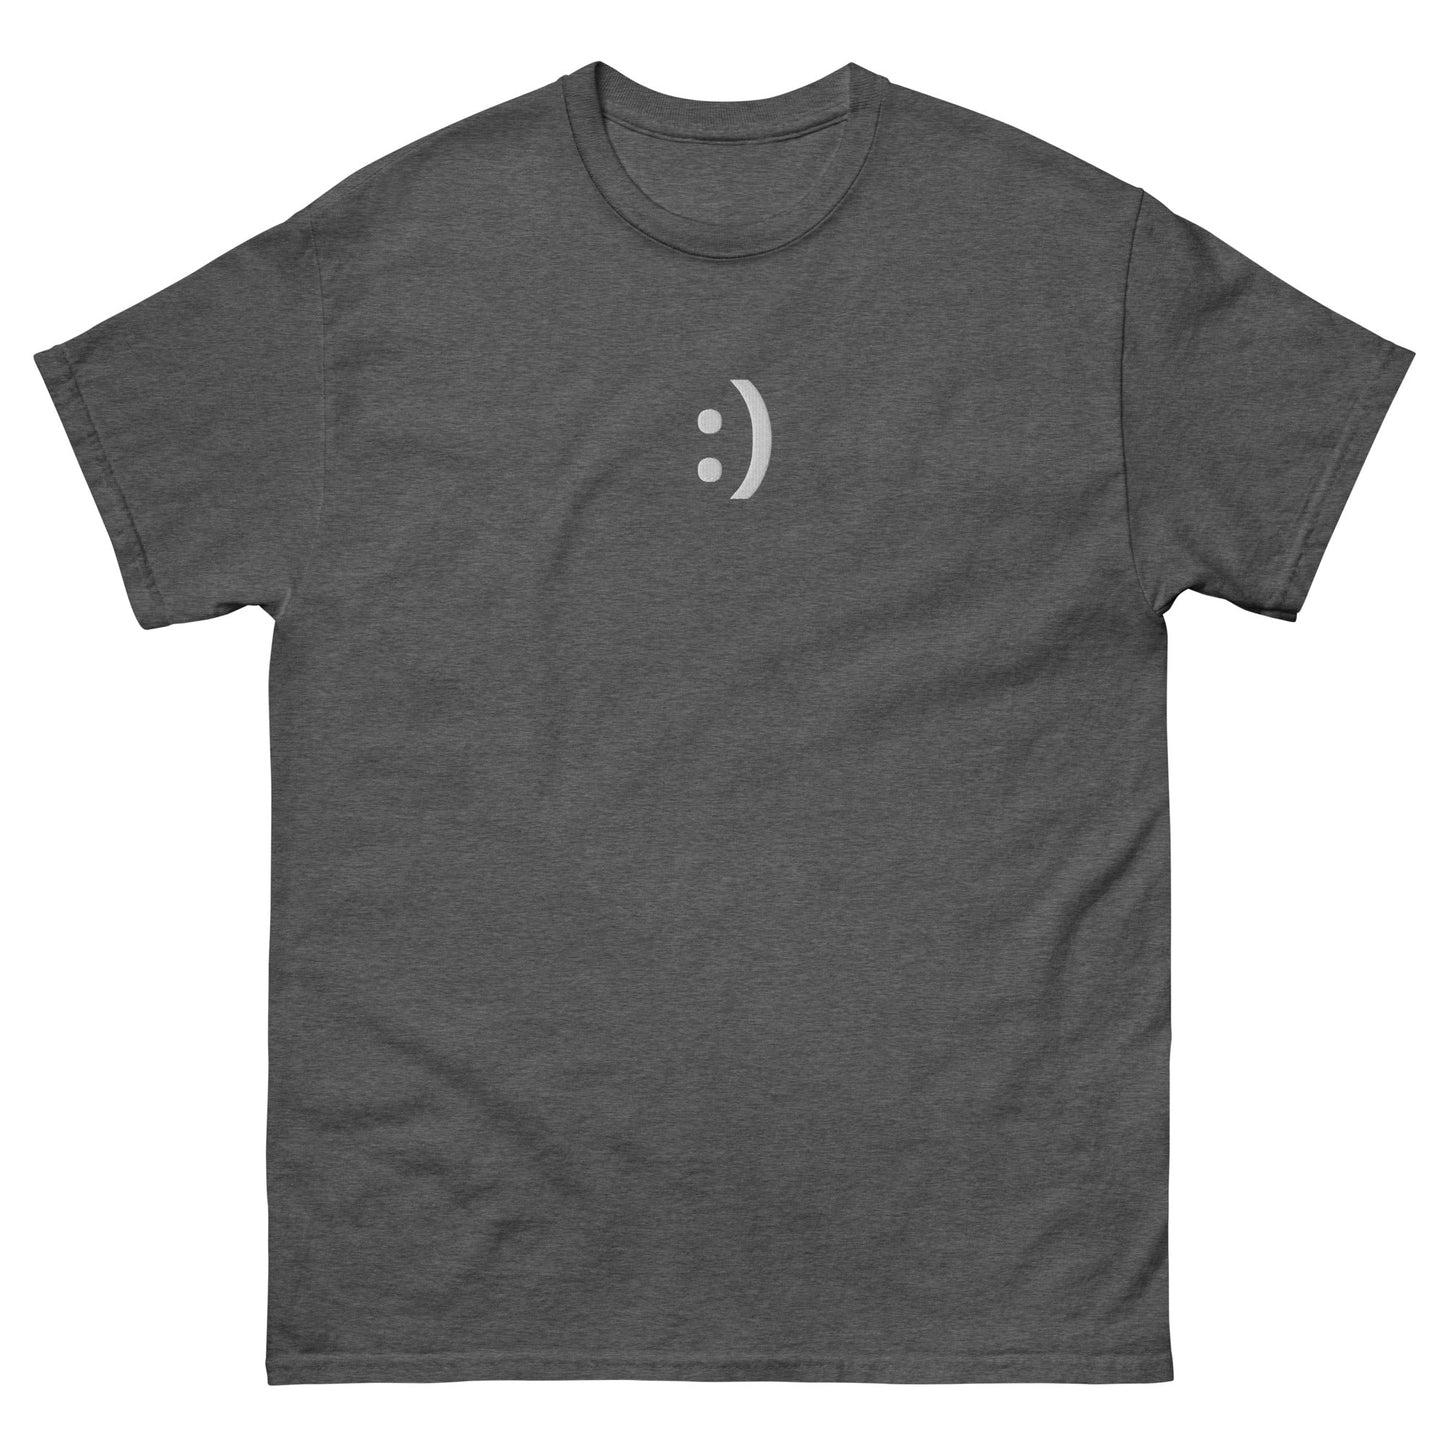 Dark Heather :) | Happy Smiley Emoji Graphic T shirt for Men and Women - Emote IRL